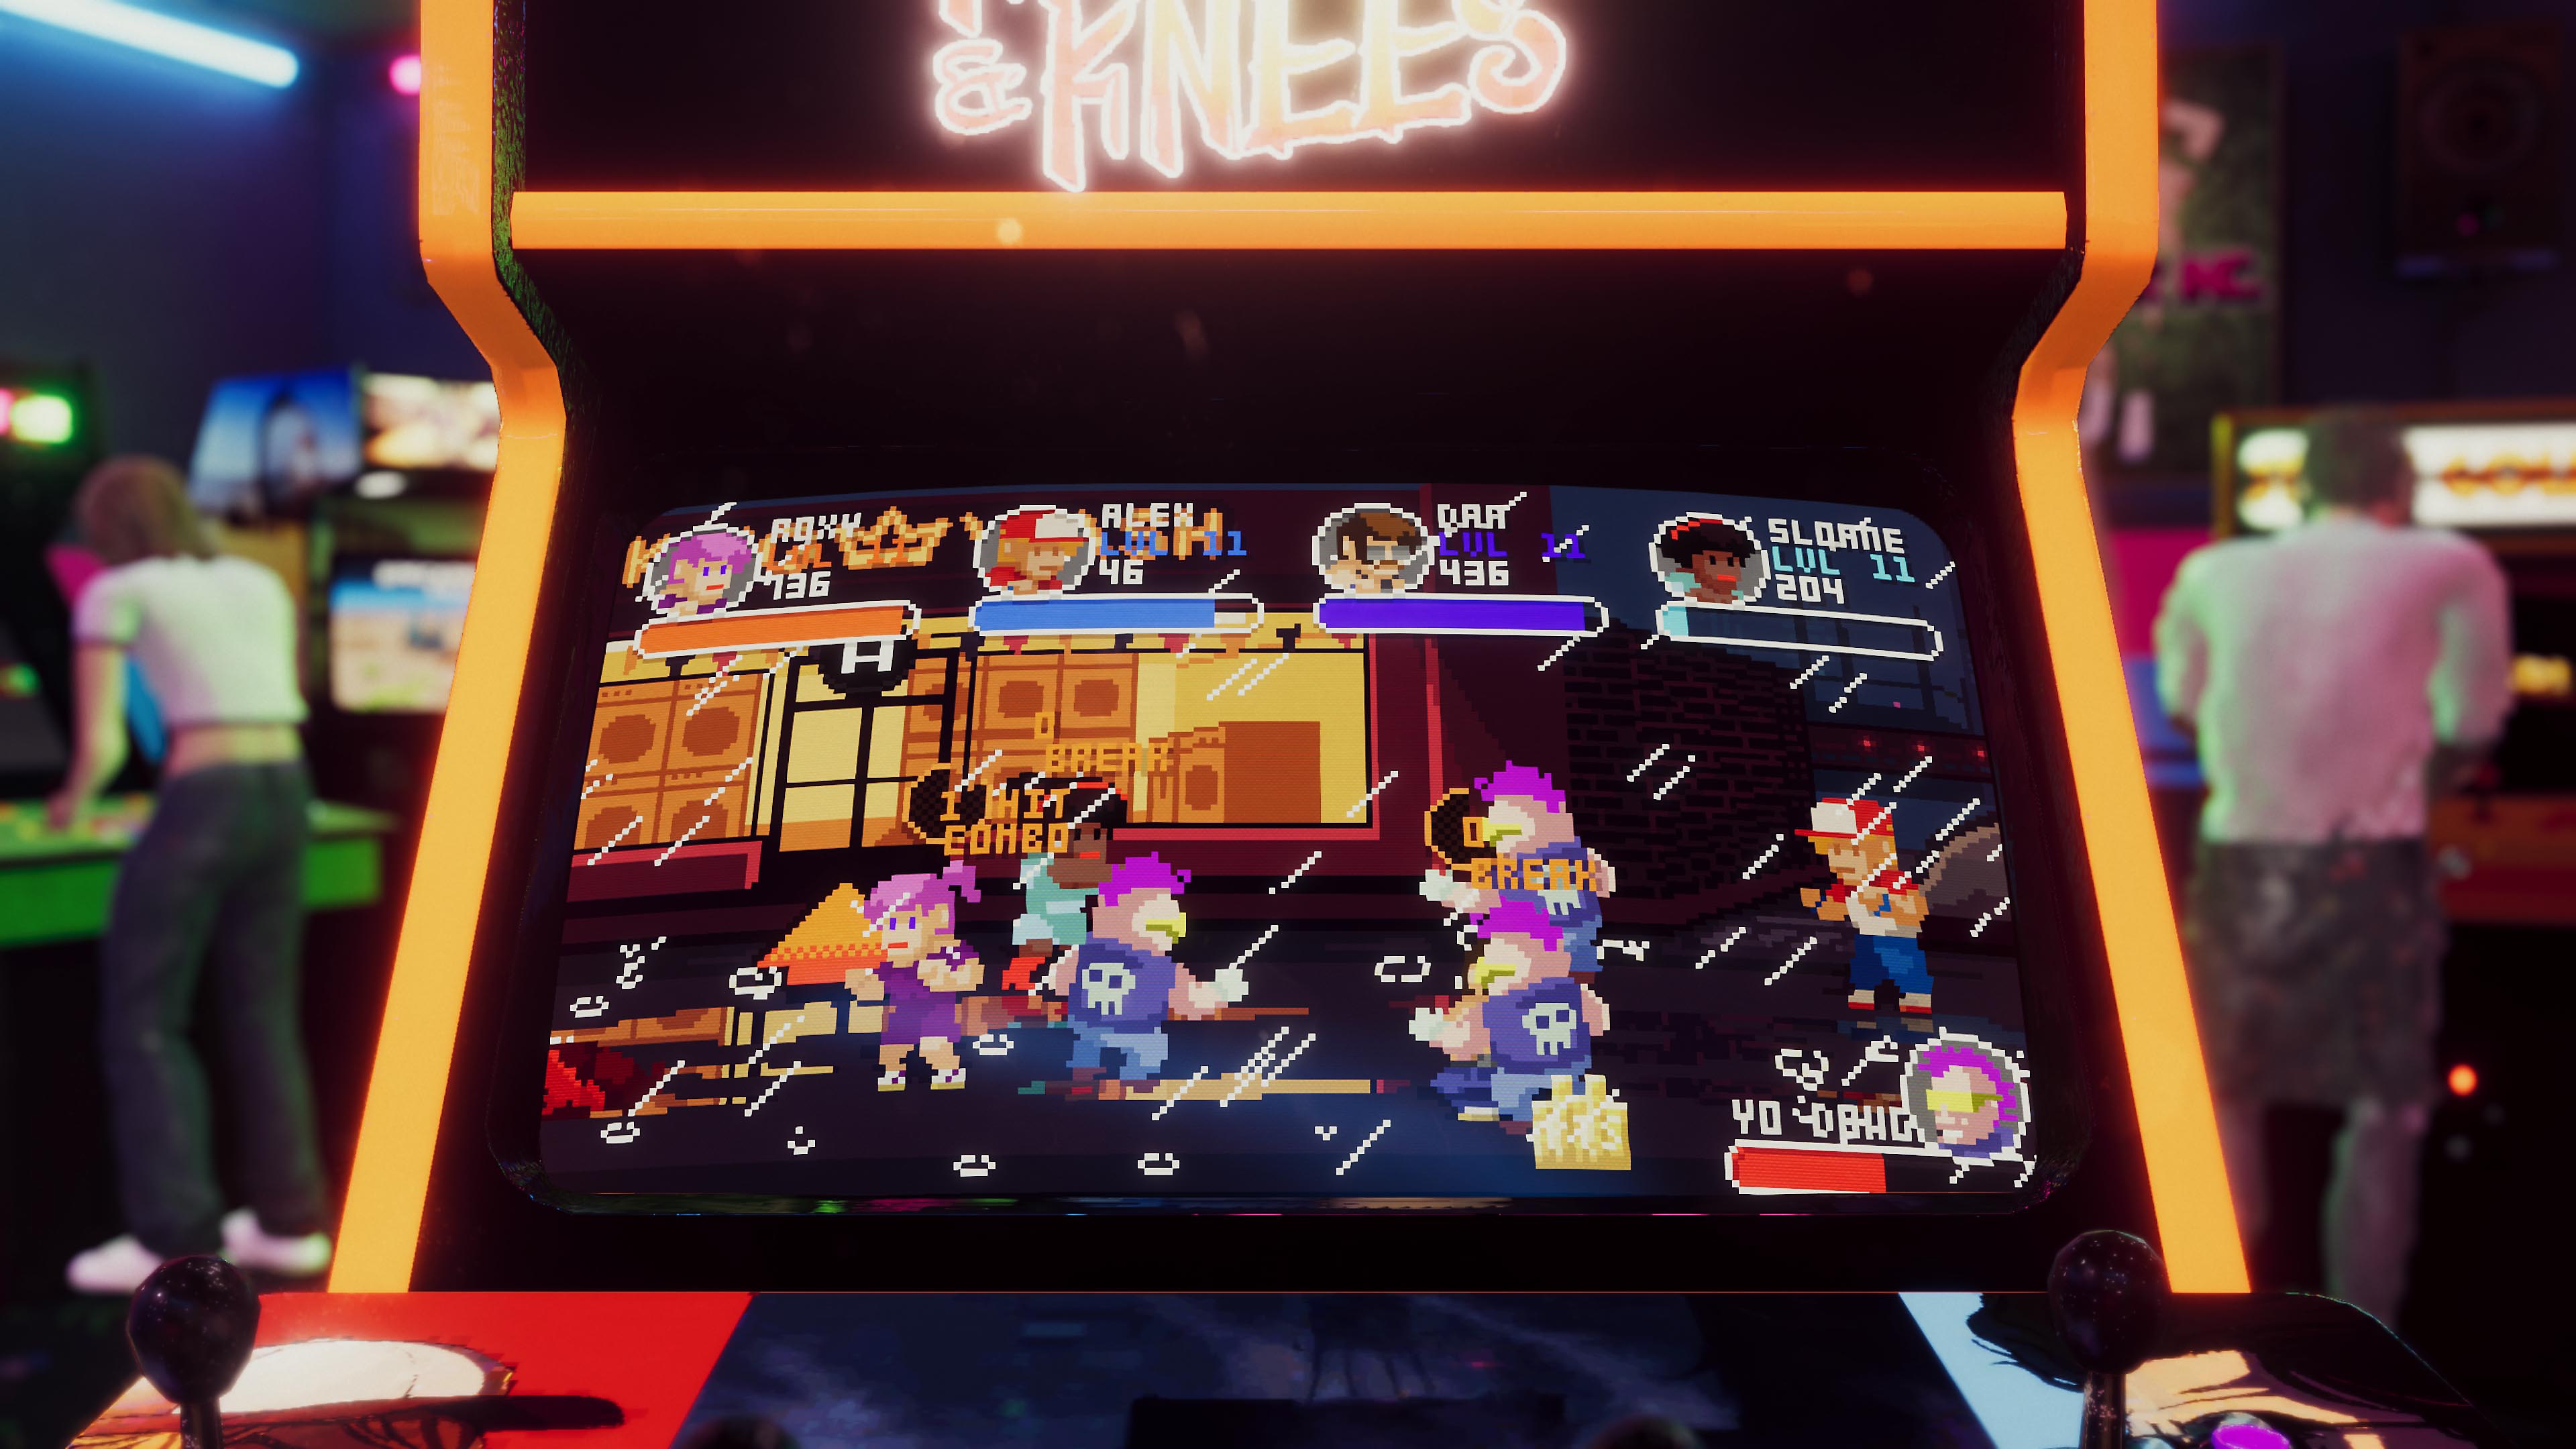 Arcade Paradise - Istantanea della schermata che mostra un cabinato con un gioco arcade retrò